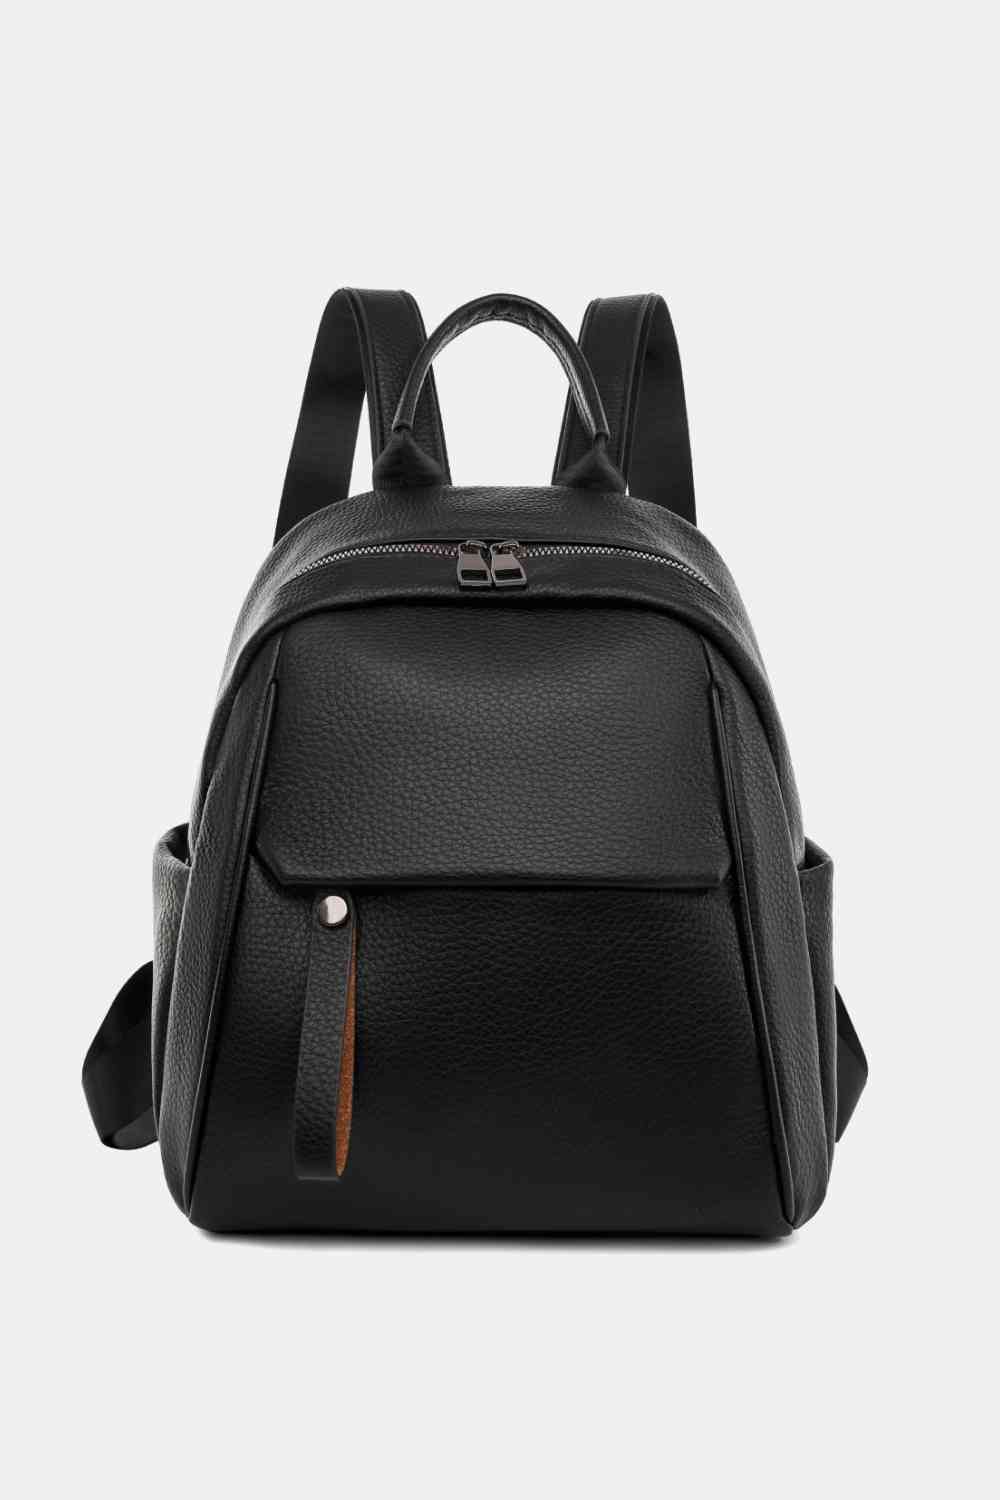 TEEK - Best Basic Backpack BAG TEEK Trend Black  